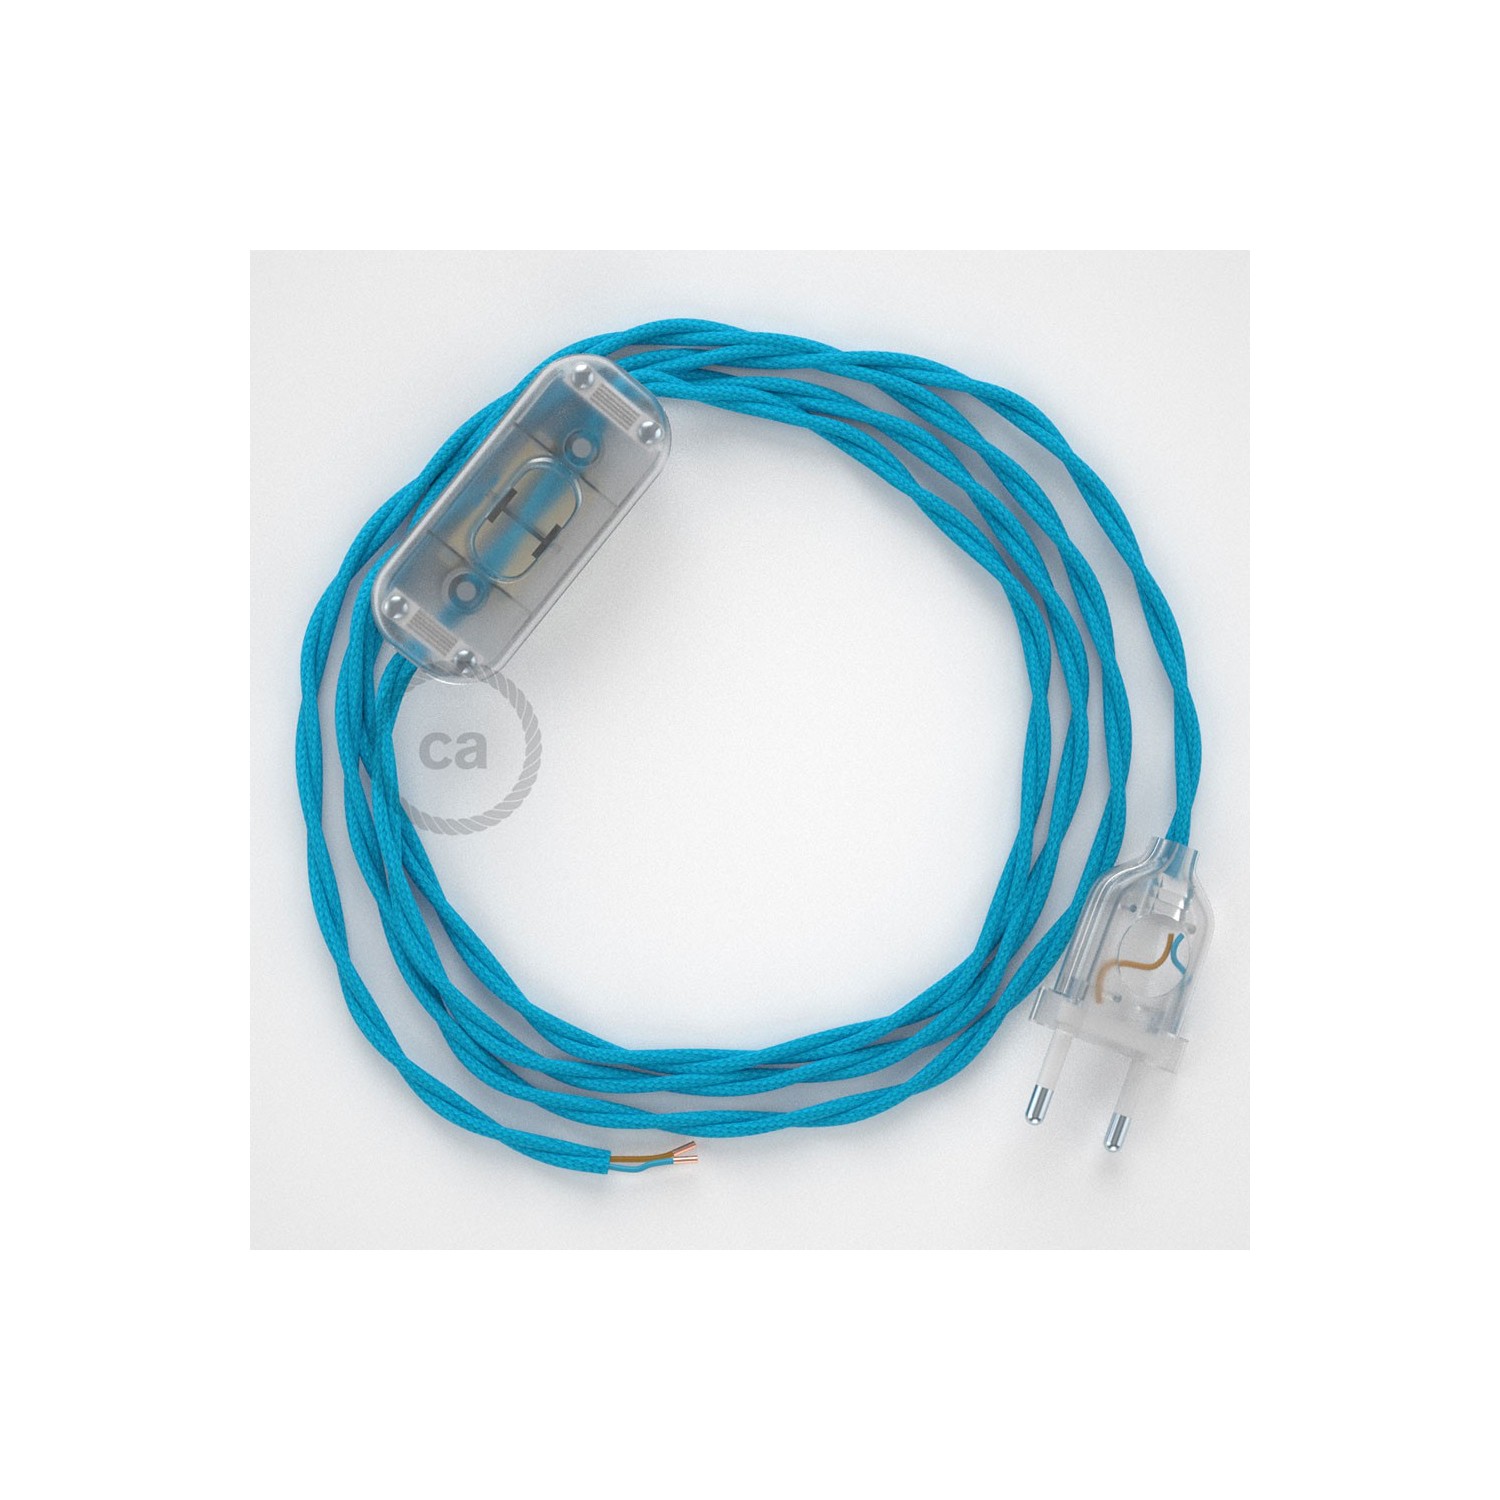 Cableado para lámpara, cable TM11 Efecto Seda Celeste 1,8m. Elige tu el color de la clavija y del interruptor!